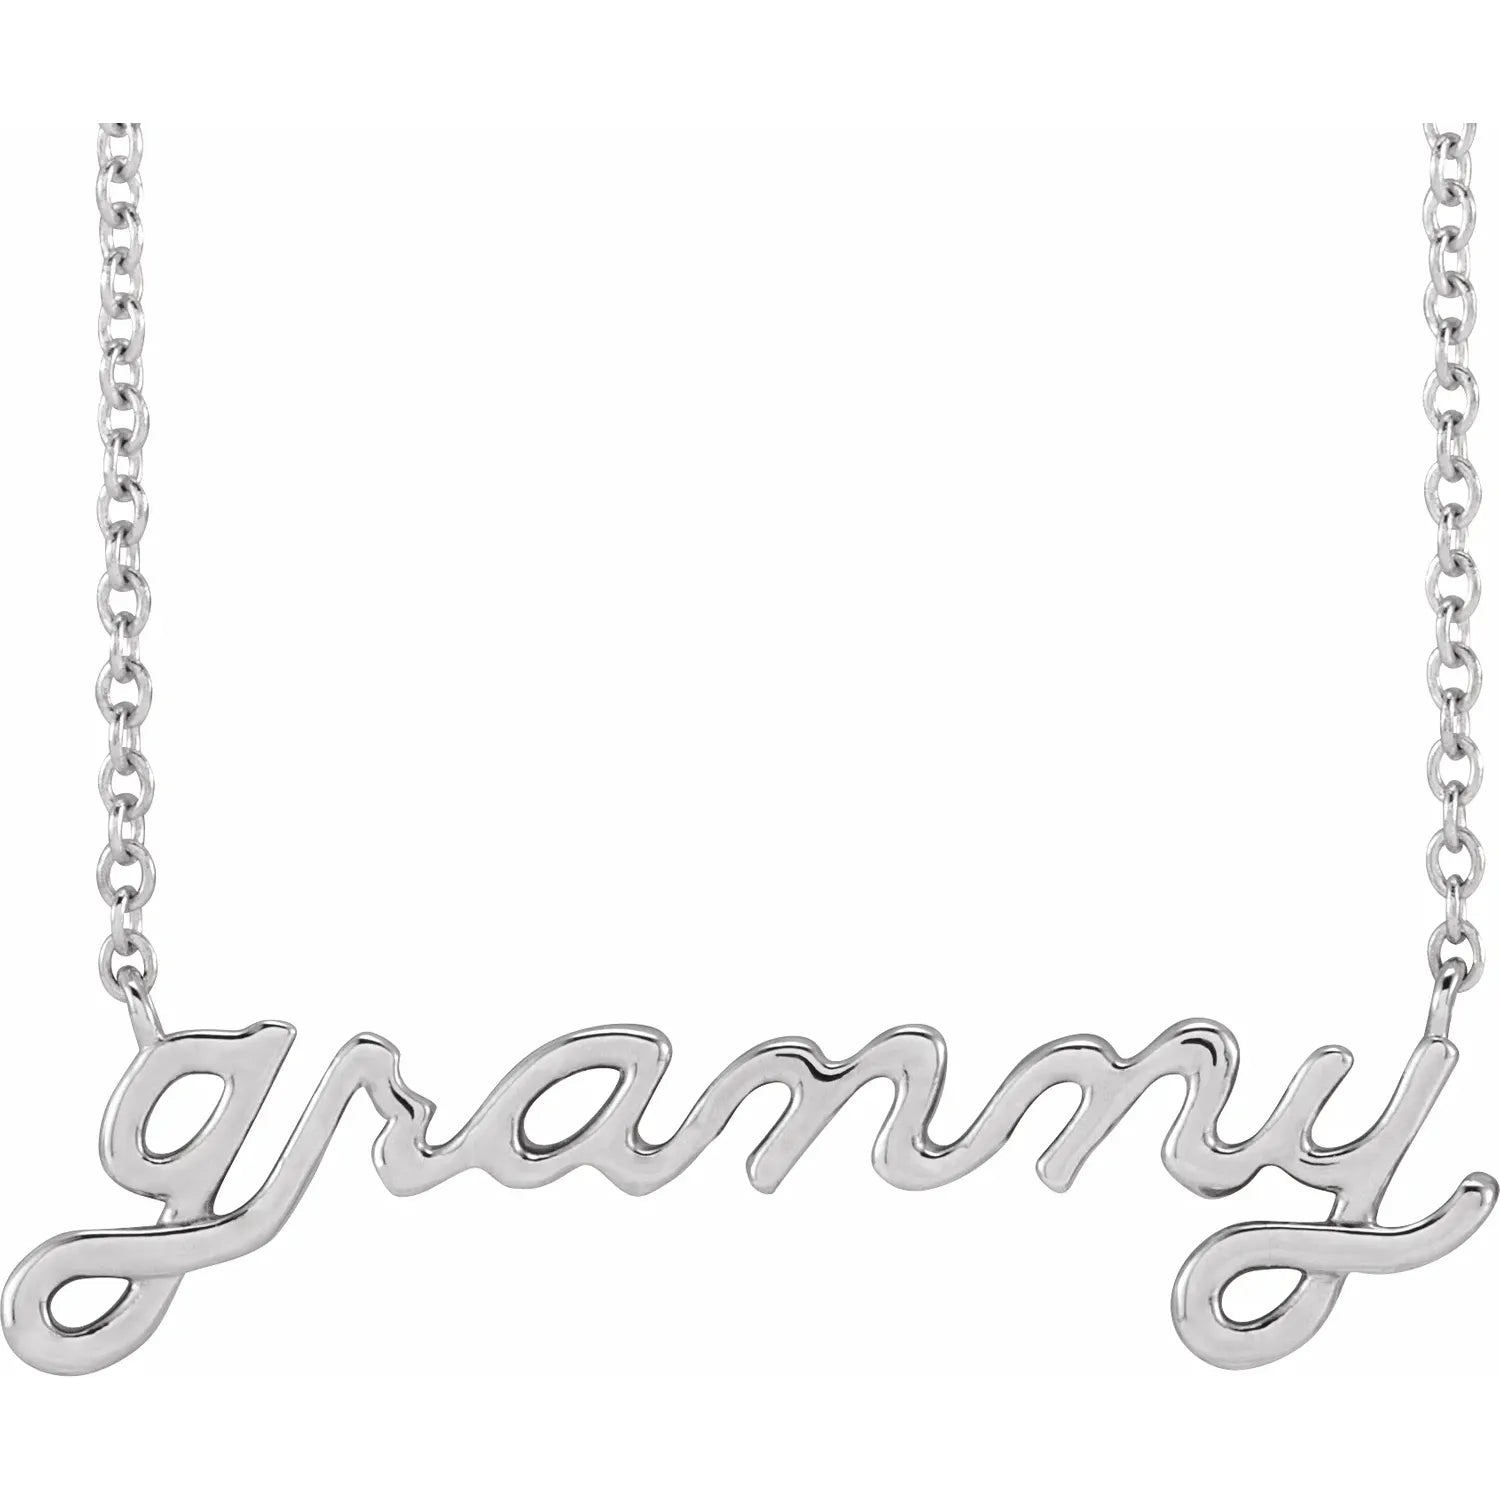 Necklace - "Granny" Script #2324